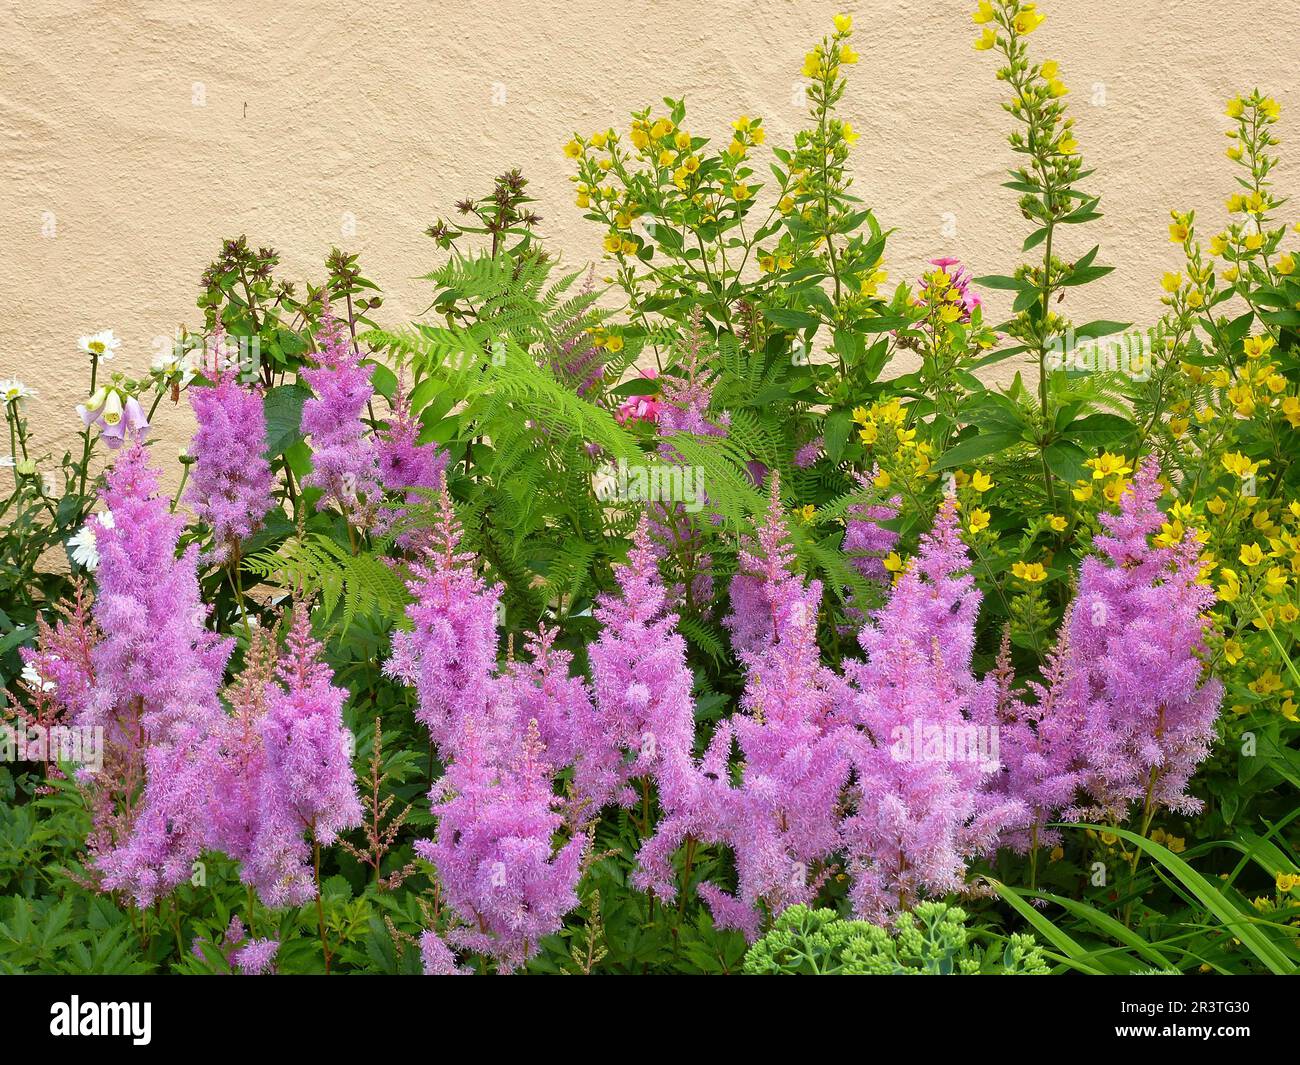 Astilbe flowering in the garden, Prachtspieren (Astilbe) Stock Photo